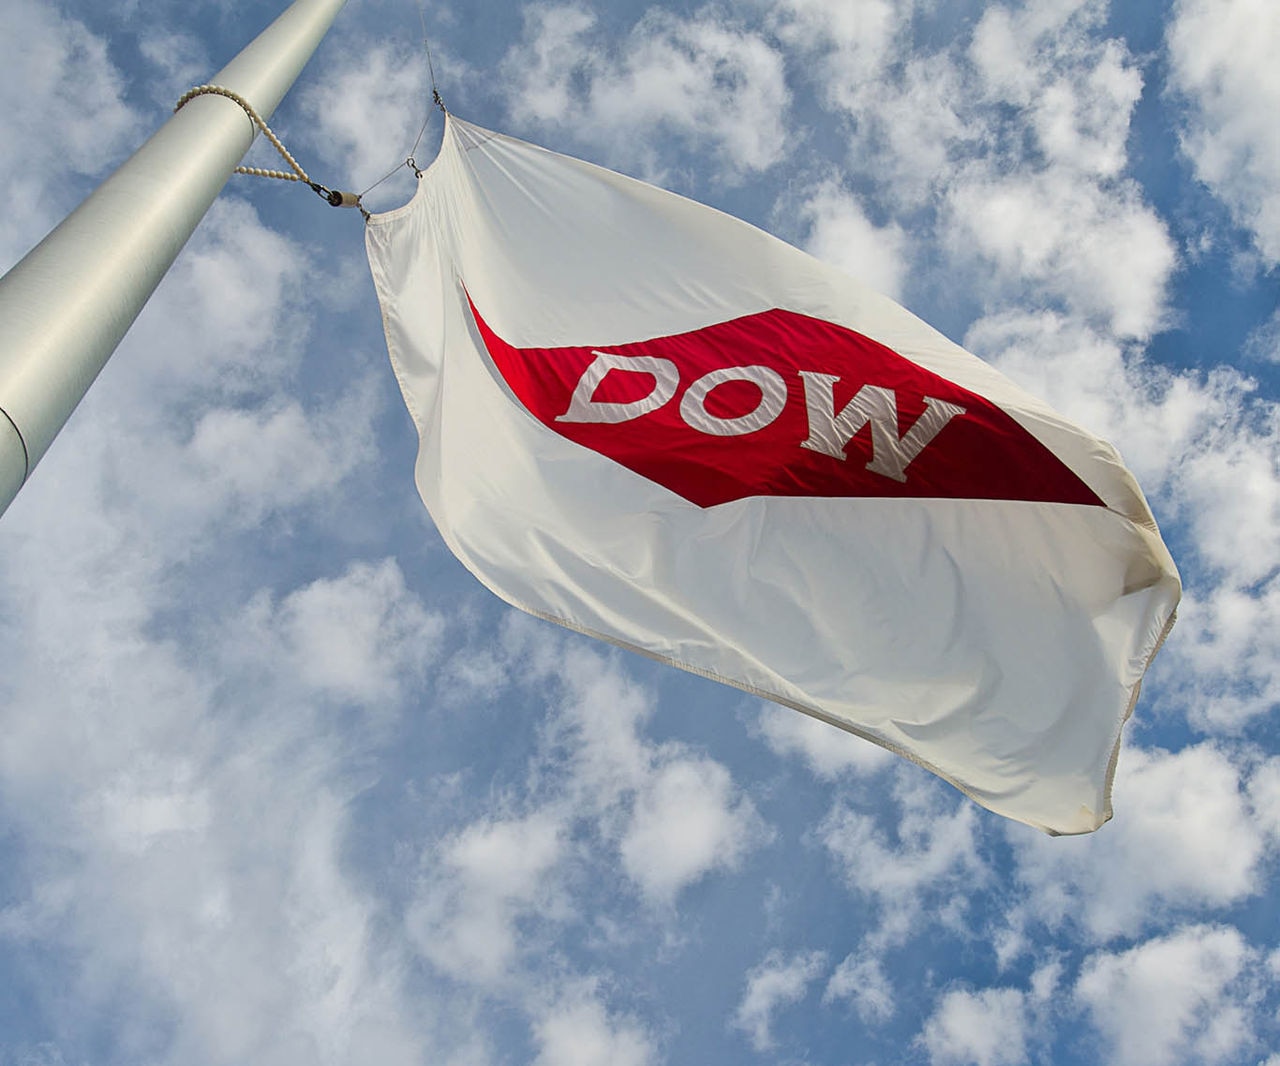 Dow flag cloudy blue sky